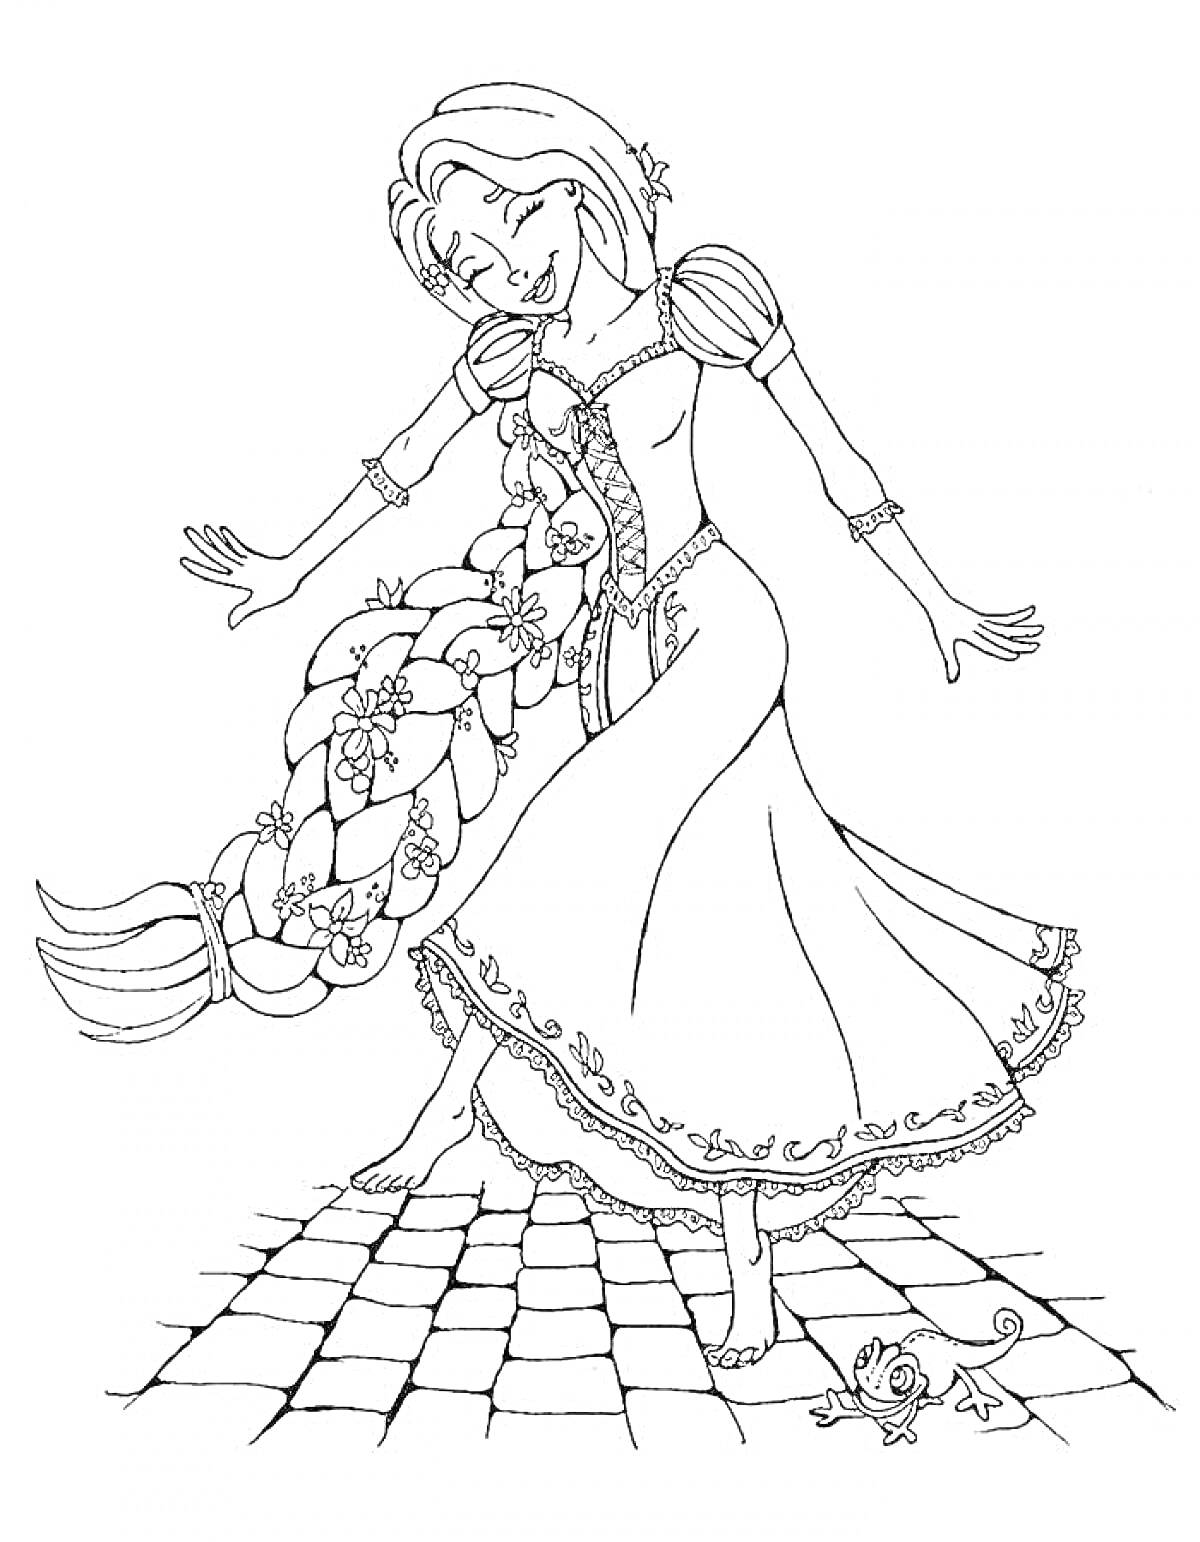 Раскраска Девочка с длинной косой, в платье, на плиточной поверхности, рядом с мышкой